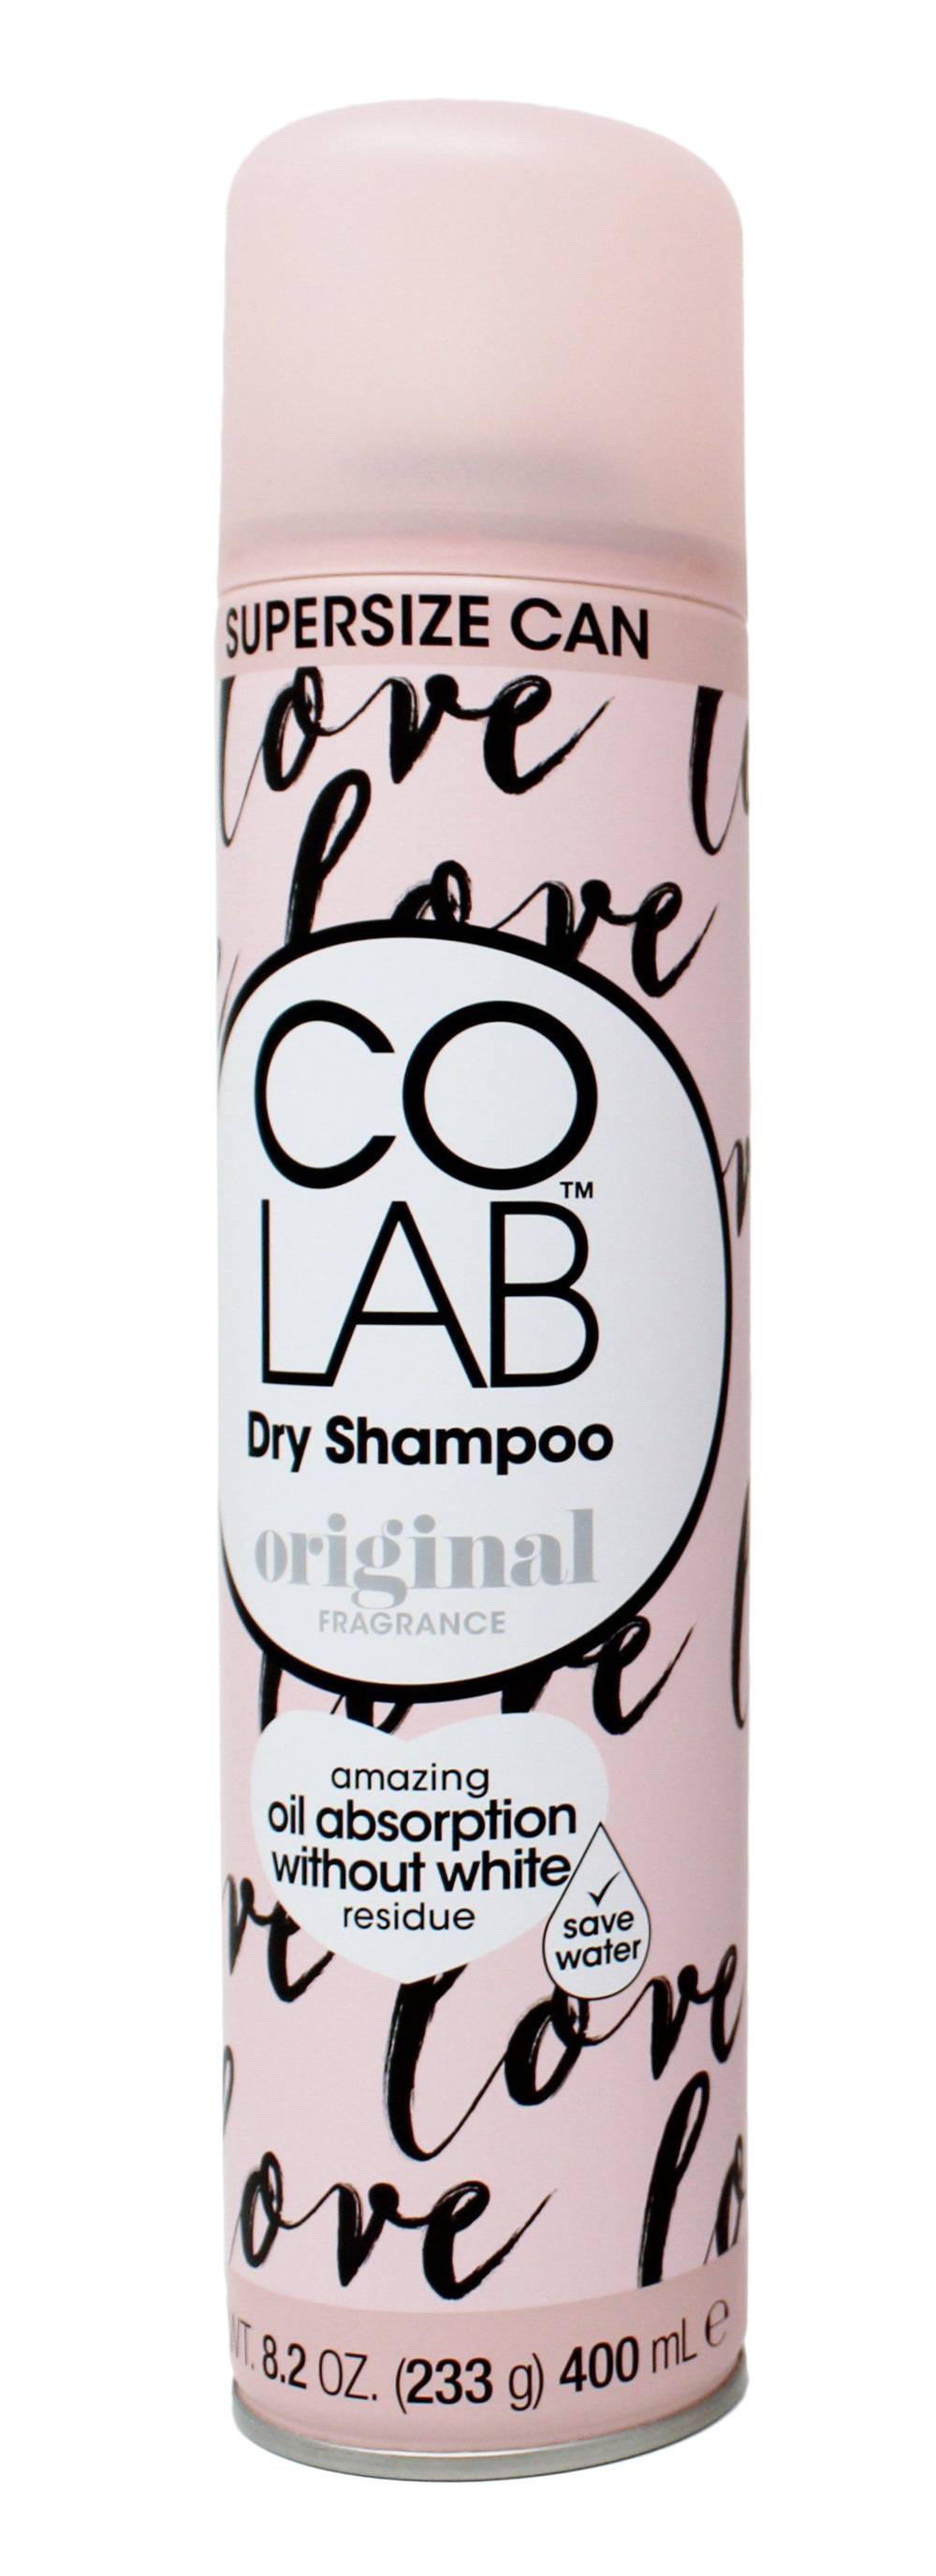 COLAB Invisible Dry Shampoo Orginal - 8.2 oz